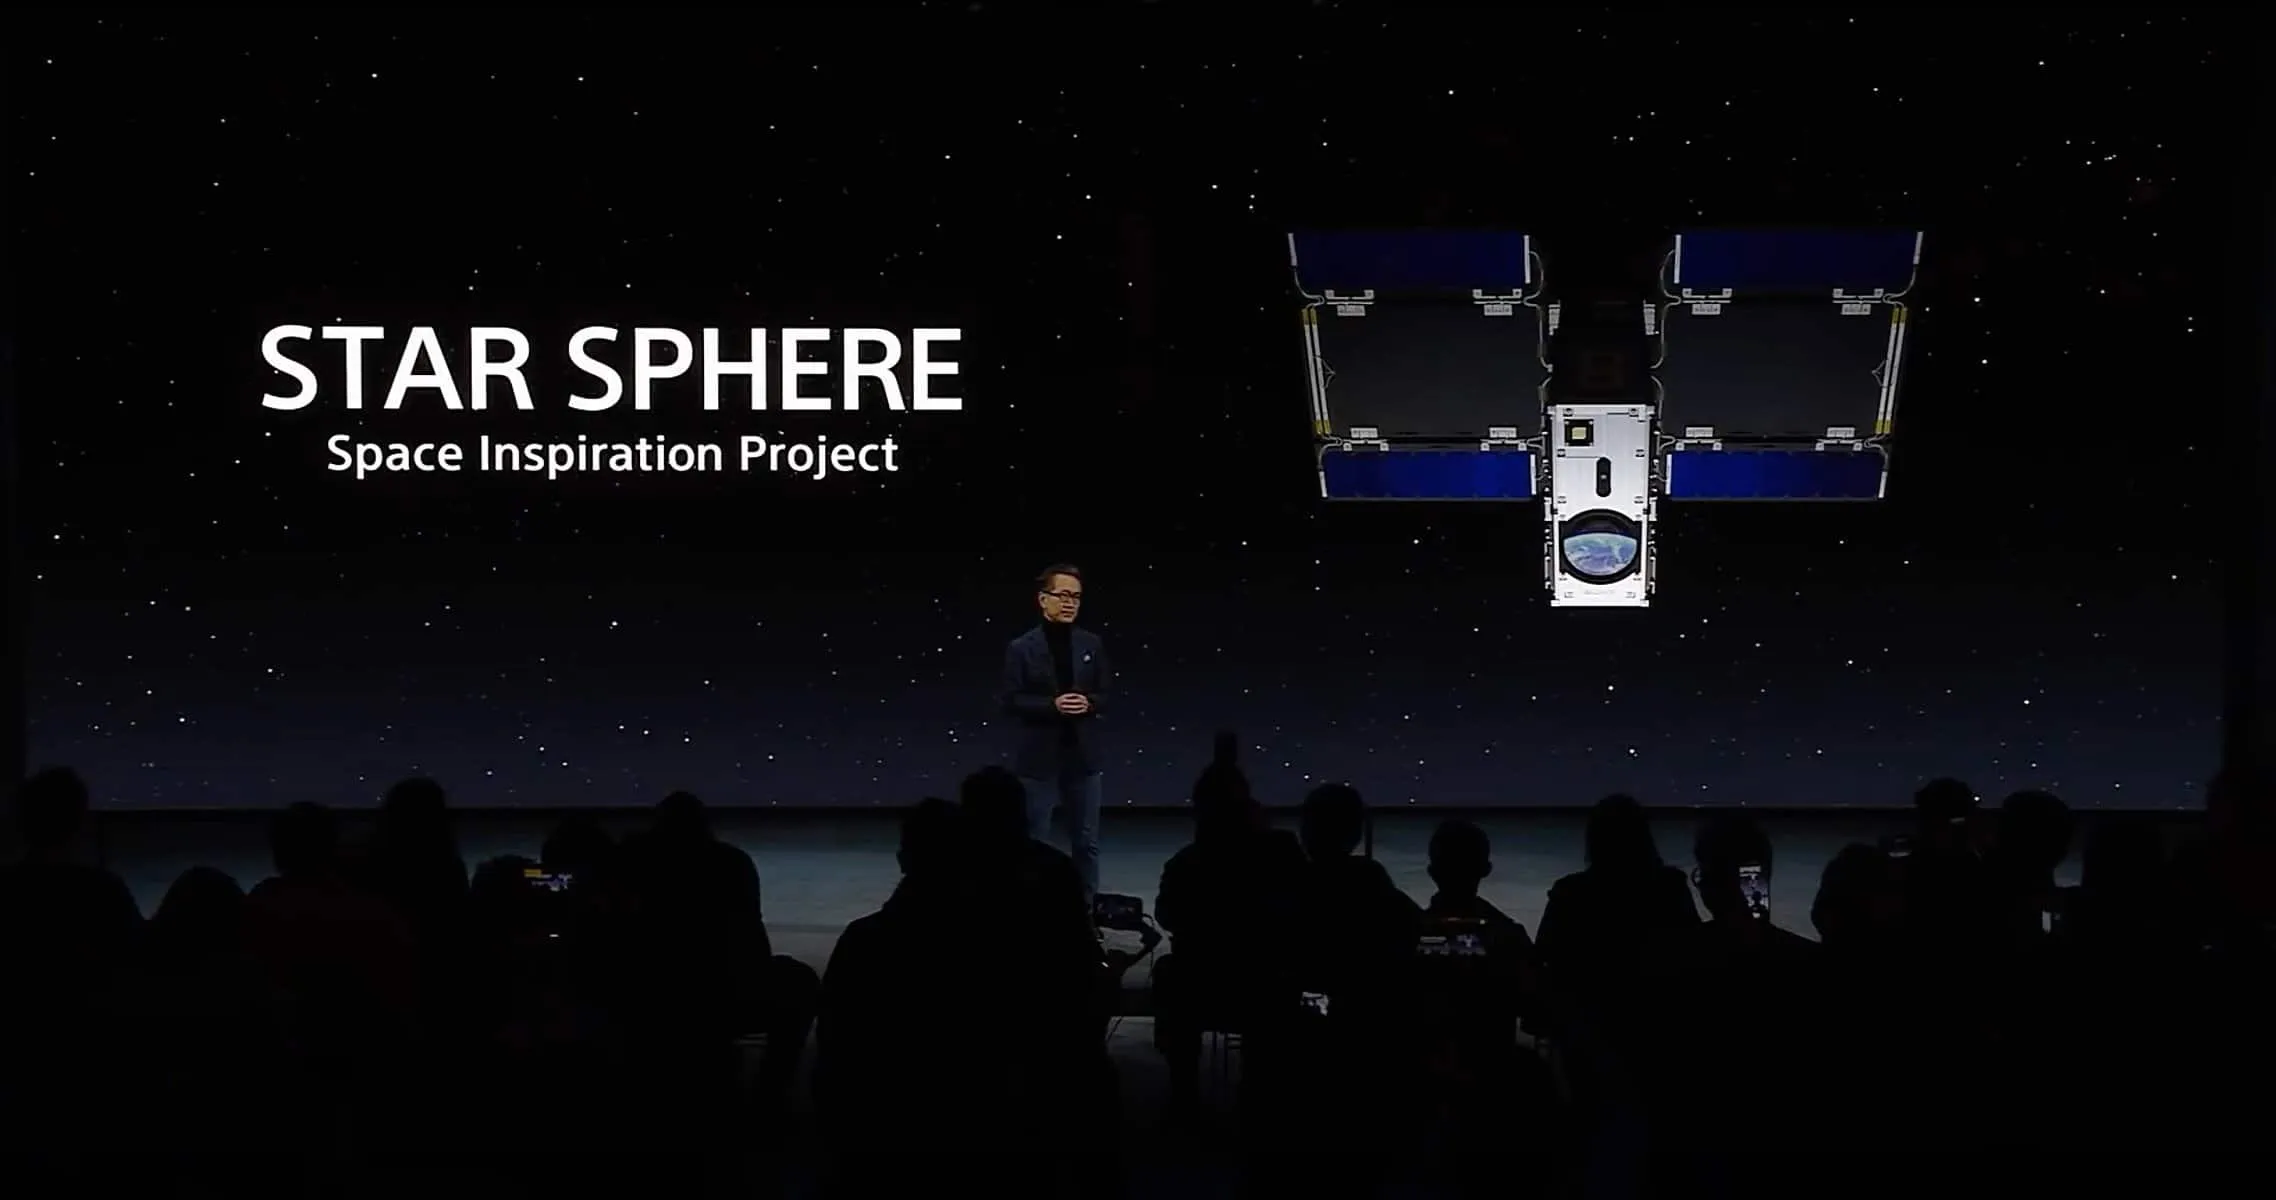 STAR SPHERE: творческий космический опыт с помощью наноспутника